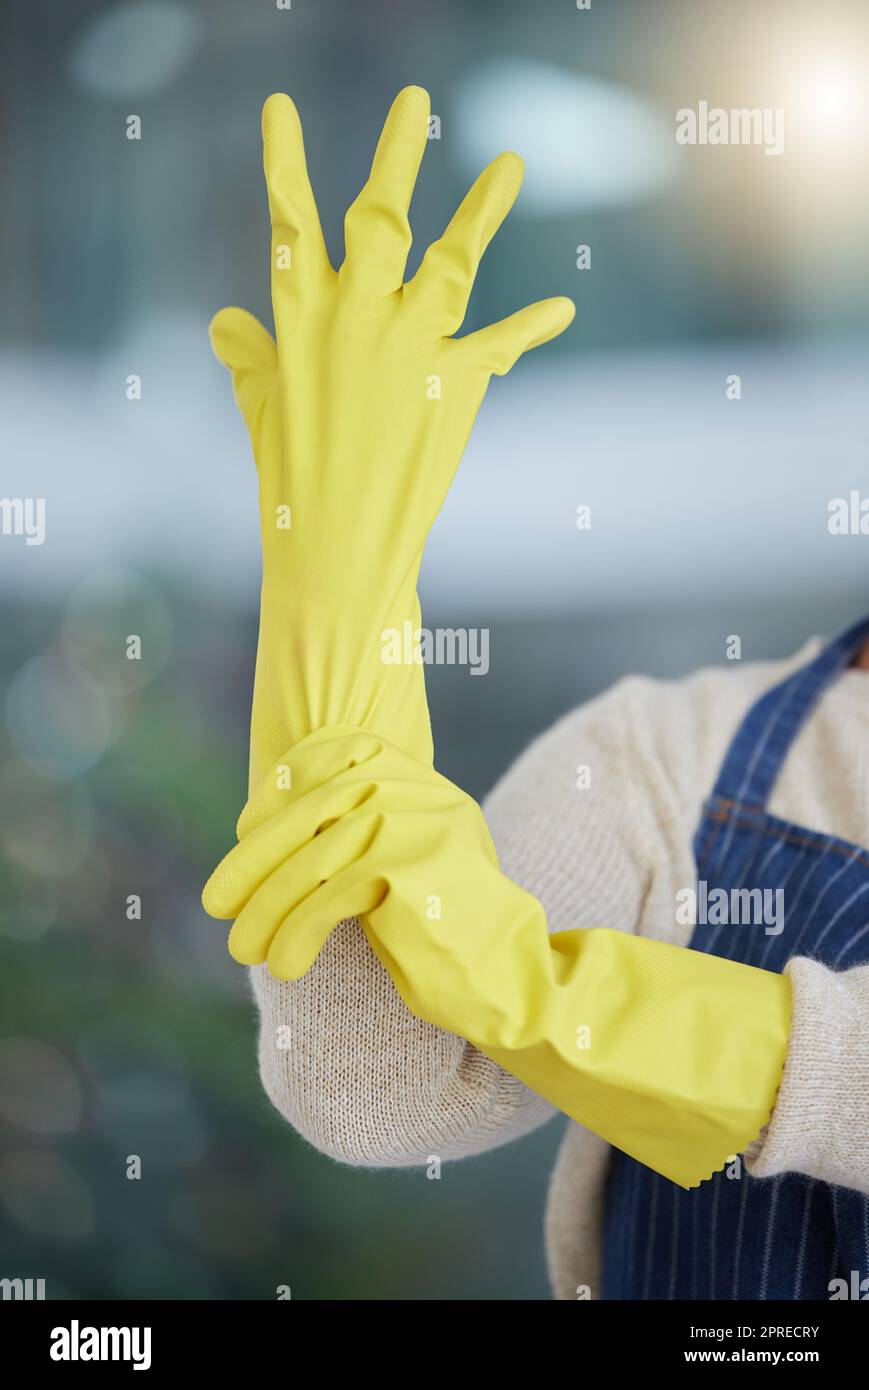 Mujer, manos o guantes de limpieza para el limpiador del hogar, servicio o trabajador. Zoom en la seguridad sanitaria, la seguridad o la protección de goma para mí Fotografía de